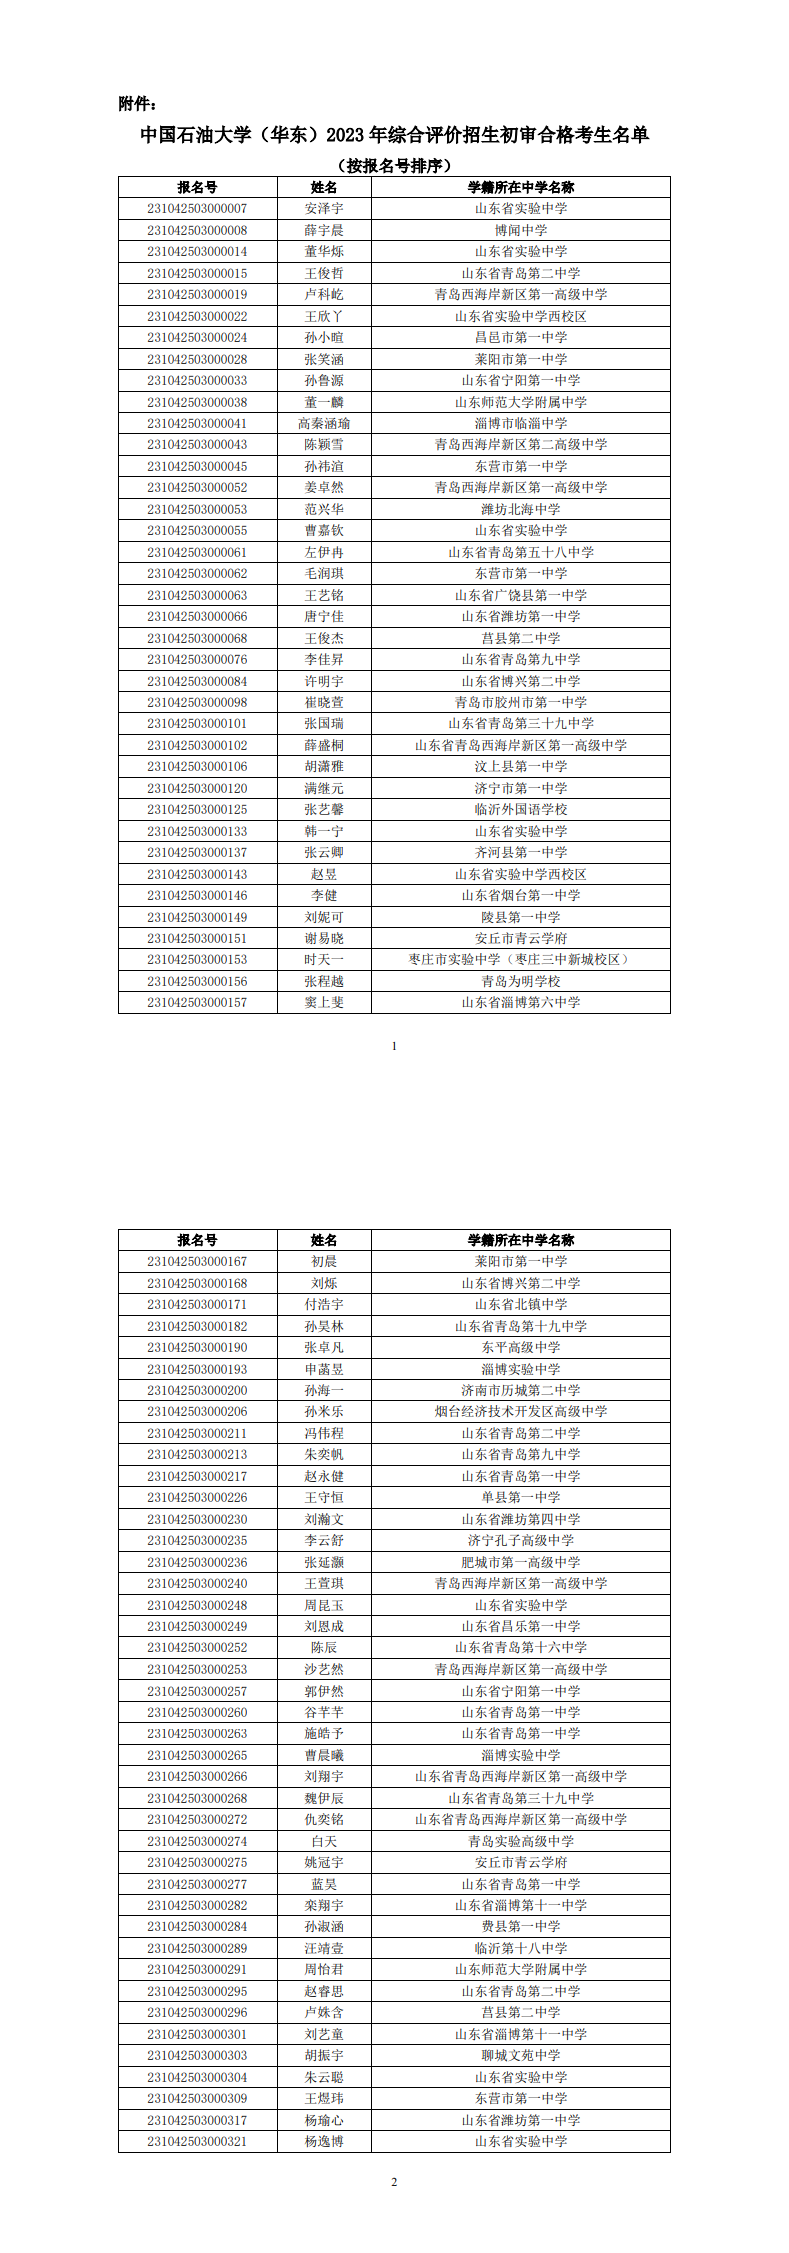 中国石油大学（华东）2023年综合评价初审名单